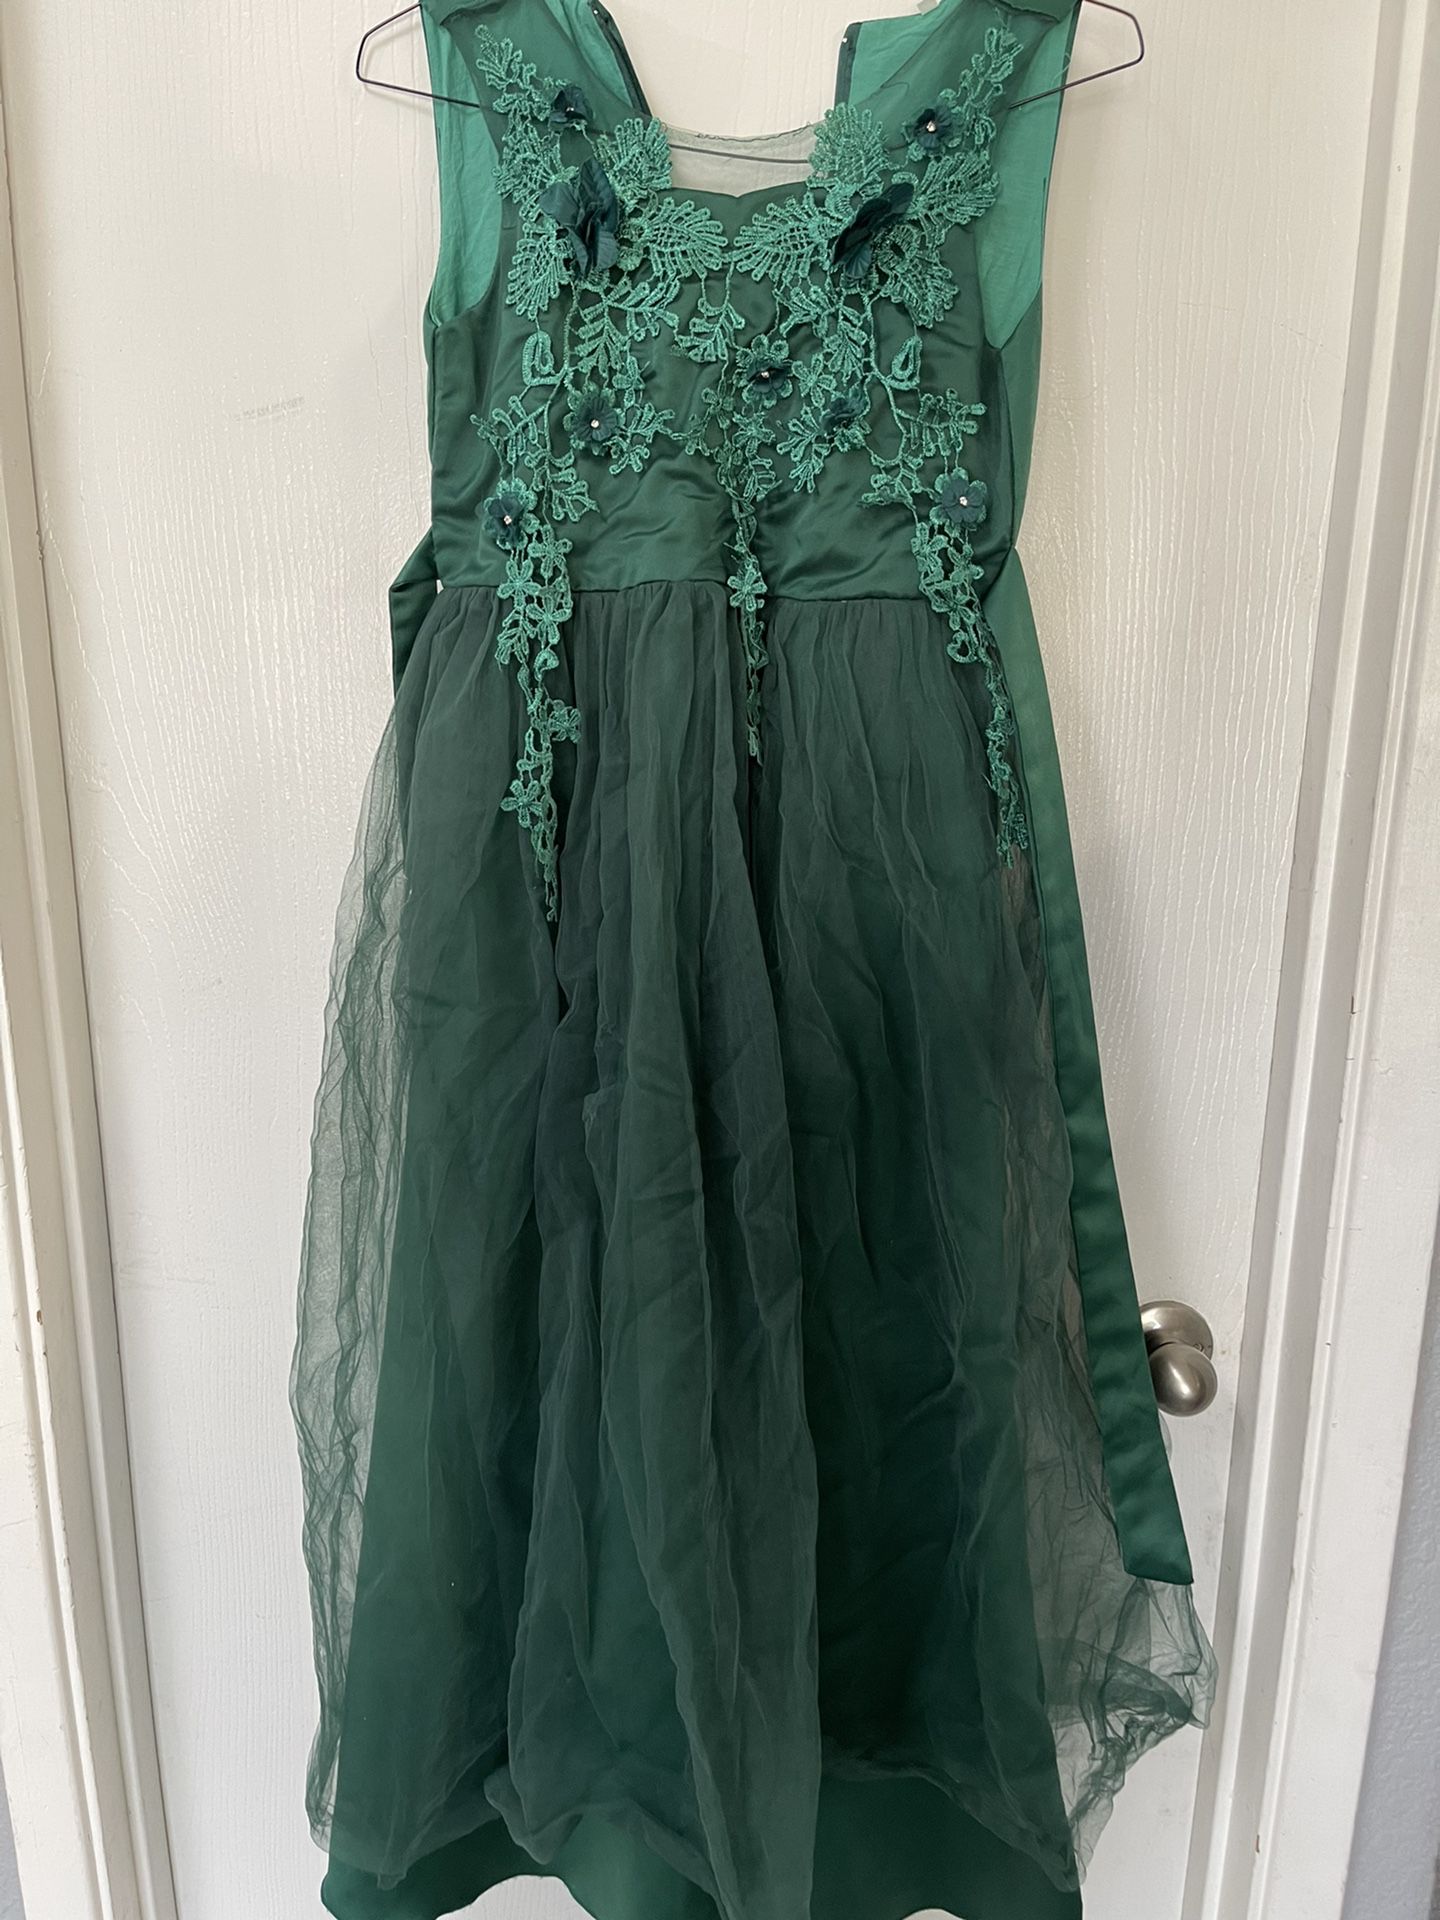 Esmerald Green Flower Girl Dress